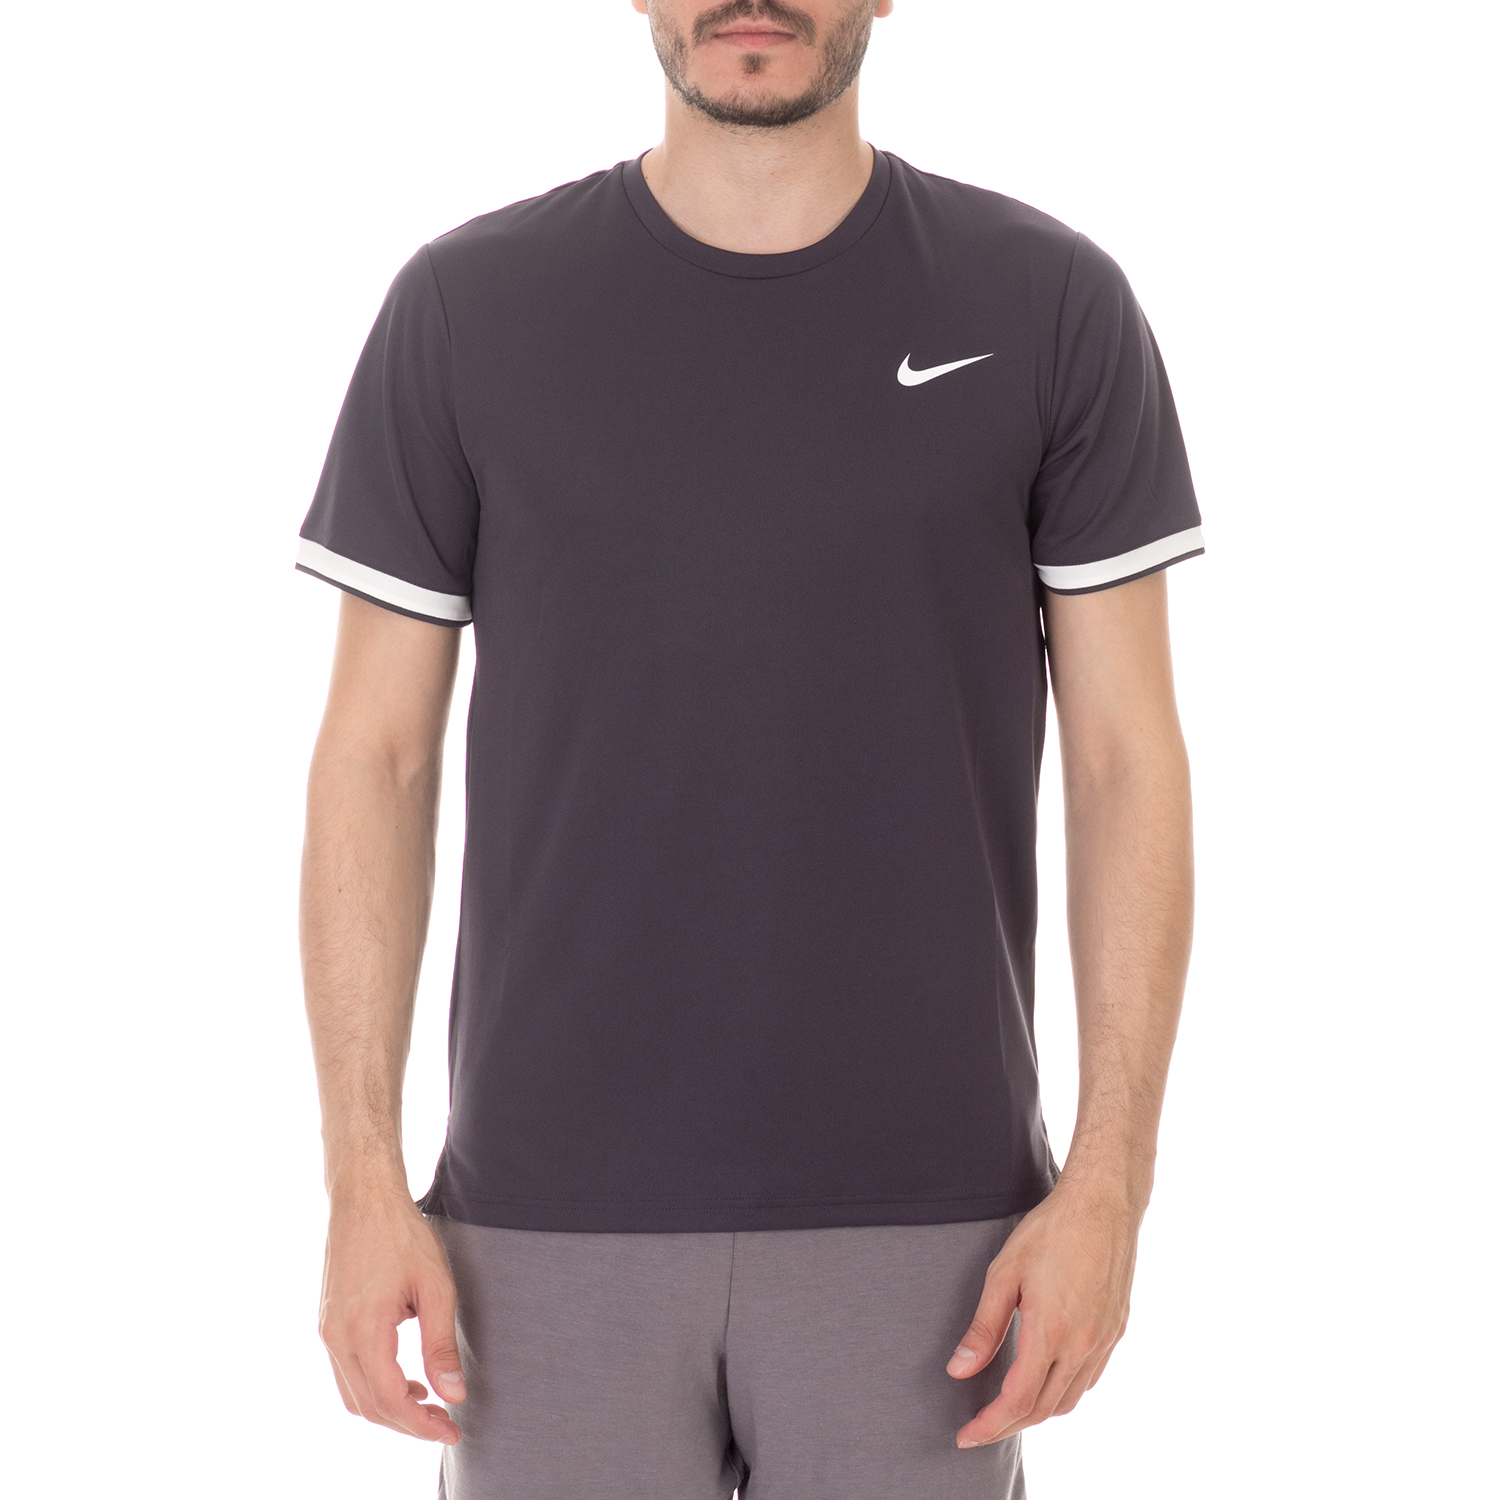 Ανδρικά/Ρούχα/Αθλητικά/T-shirt NIKE - Ανδρικό t-shirt NIKE DRY TOP TEAM μπλε